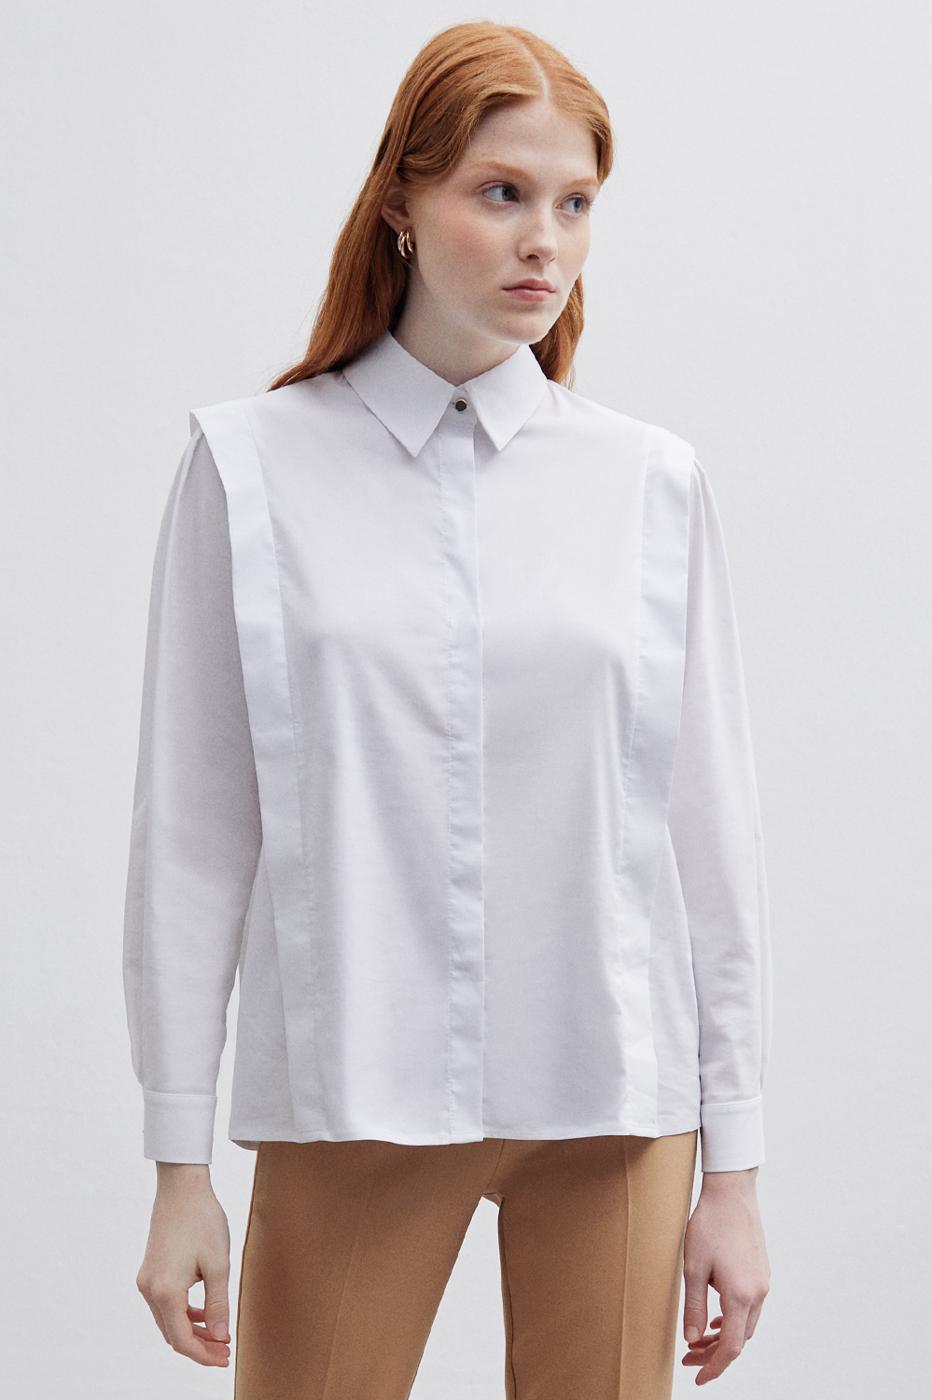 Bayan BEYAZ Ann Regular Fit Gömlek Yaka Standart Boy Beyaz Renk Kadın Gömlek